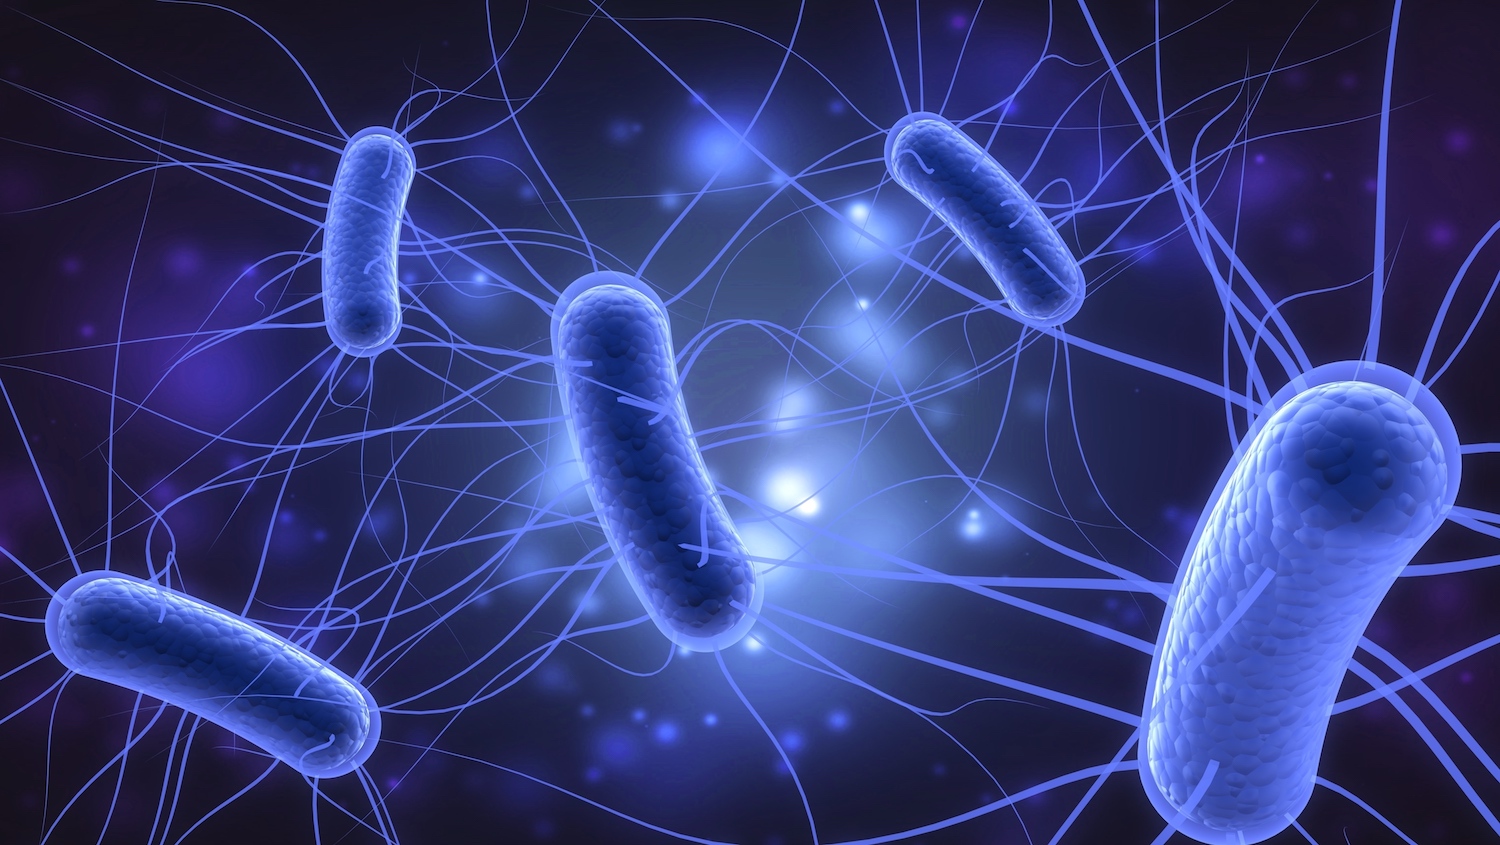 Νέα μελέτη: Το βακτήριο E.coli μπορεί να αναπτύξει ανησυχητικά υψηλή αντοχή στα αντιβιοτικά